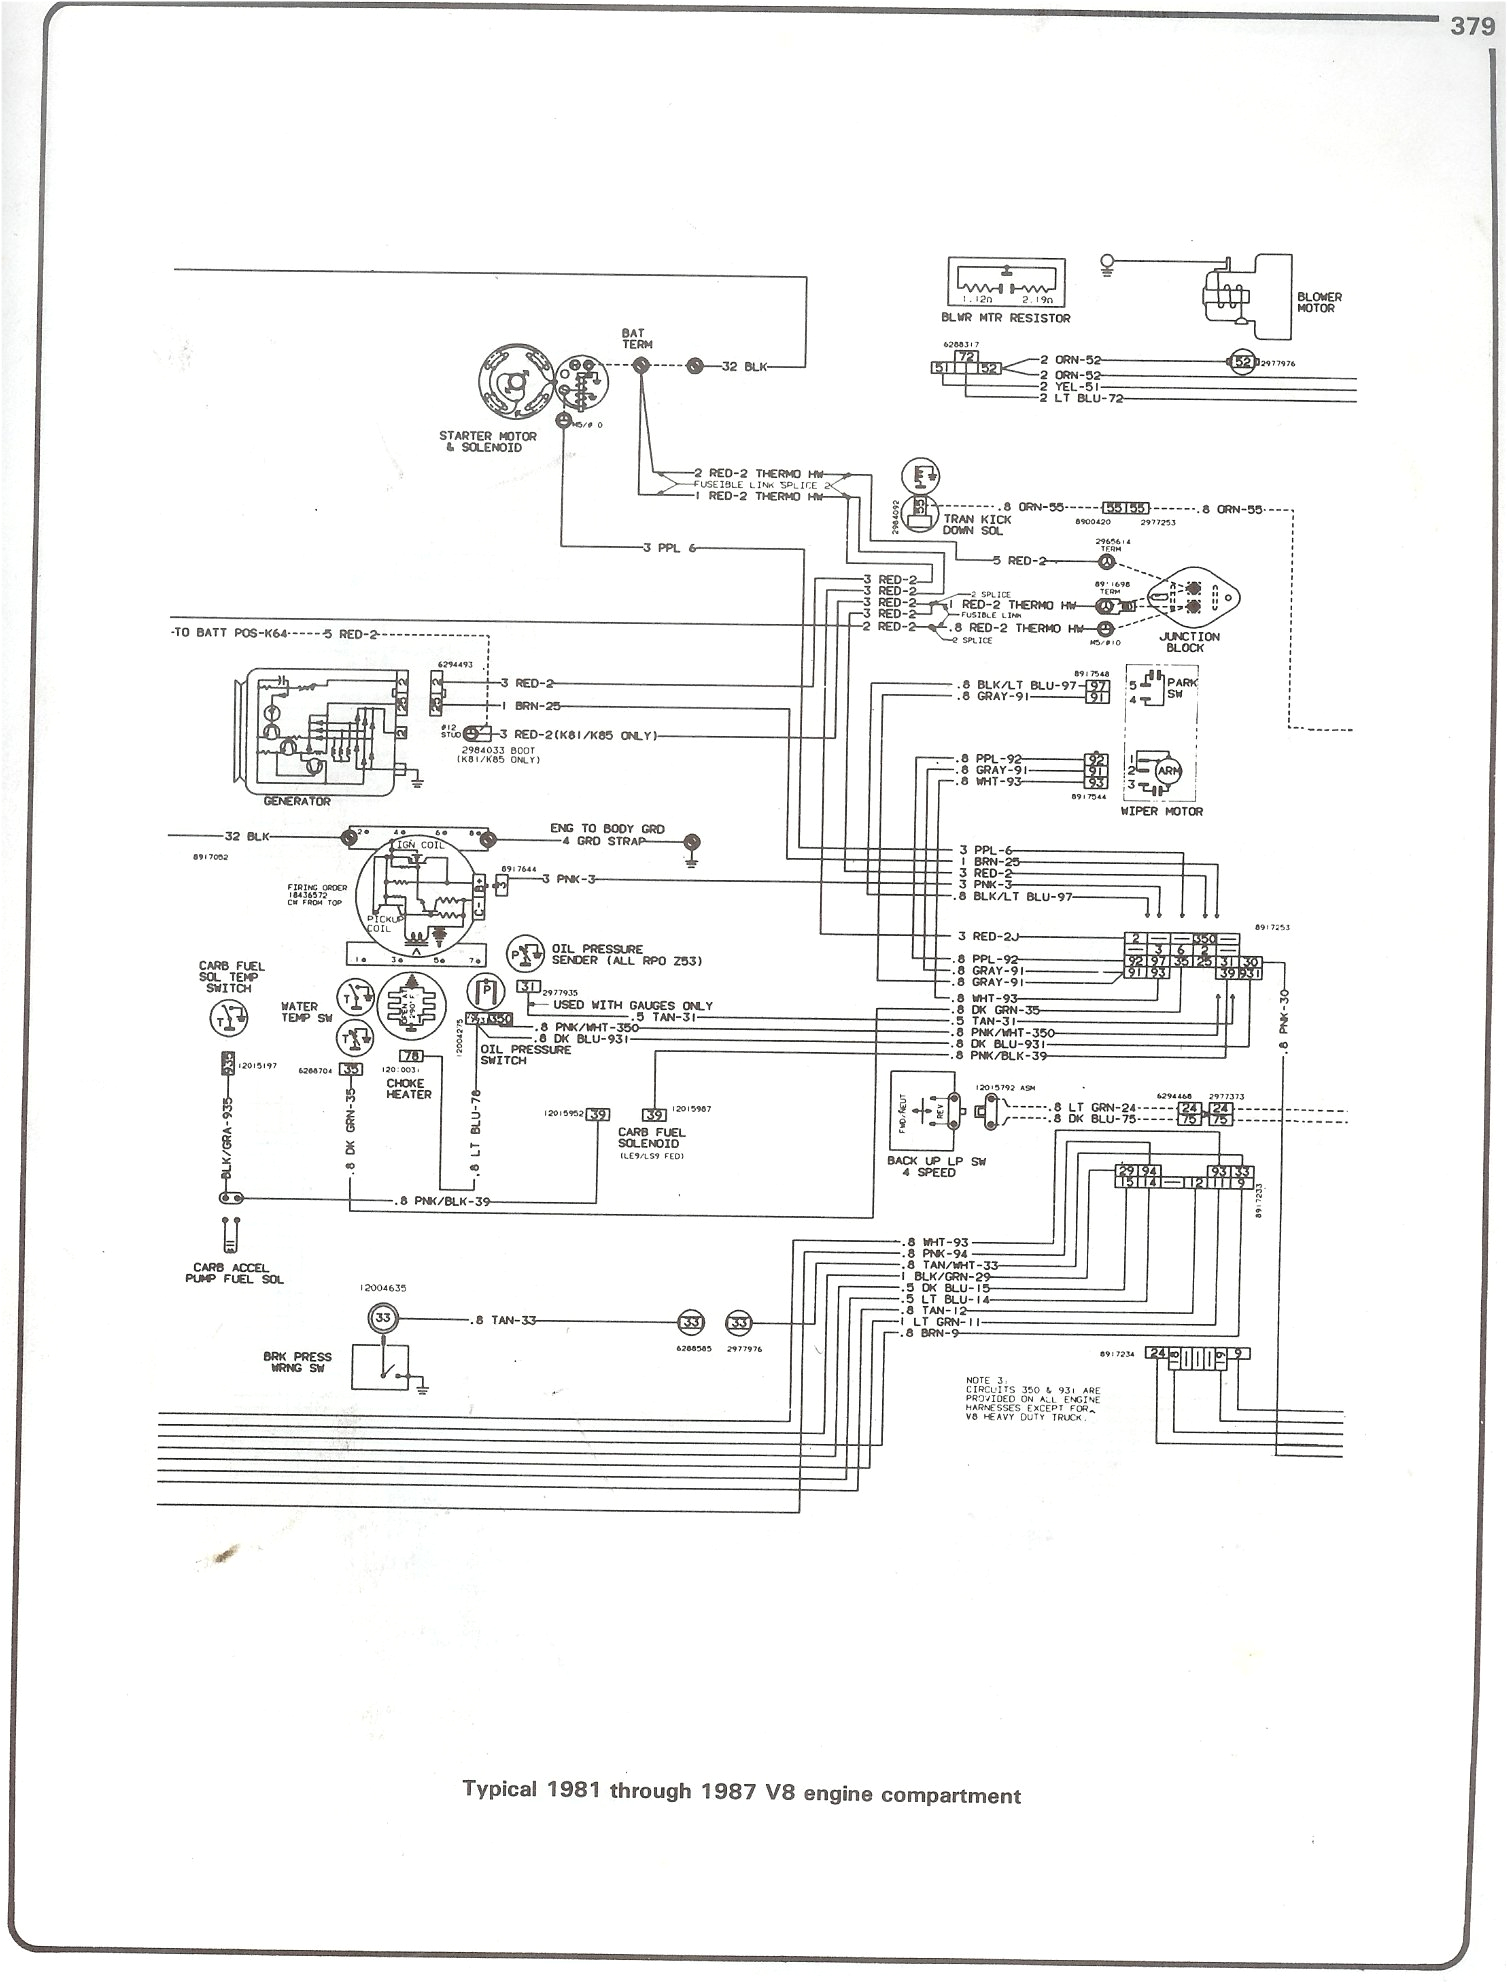 1986 chevy k10 wiring harness data schematic diagram 1986 chevy c10 engine wiring harness 1986 chevy k10 wiring harness